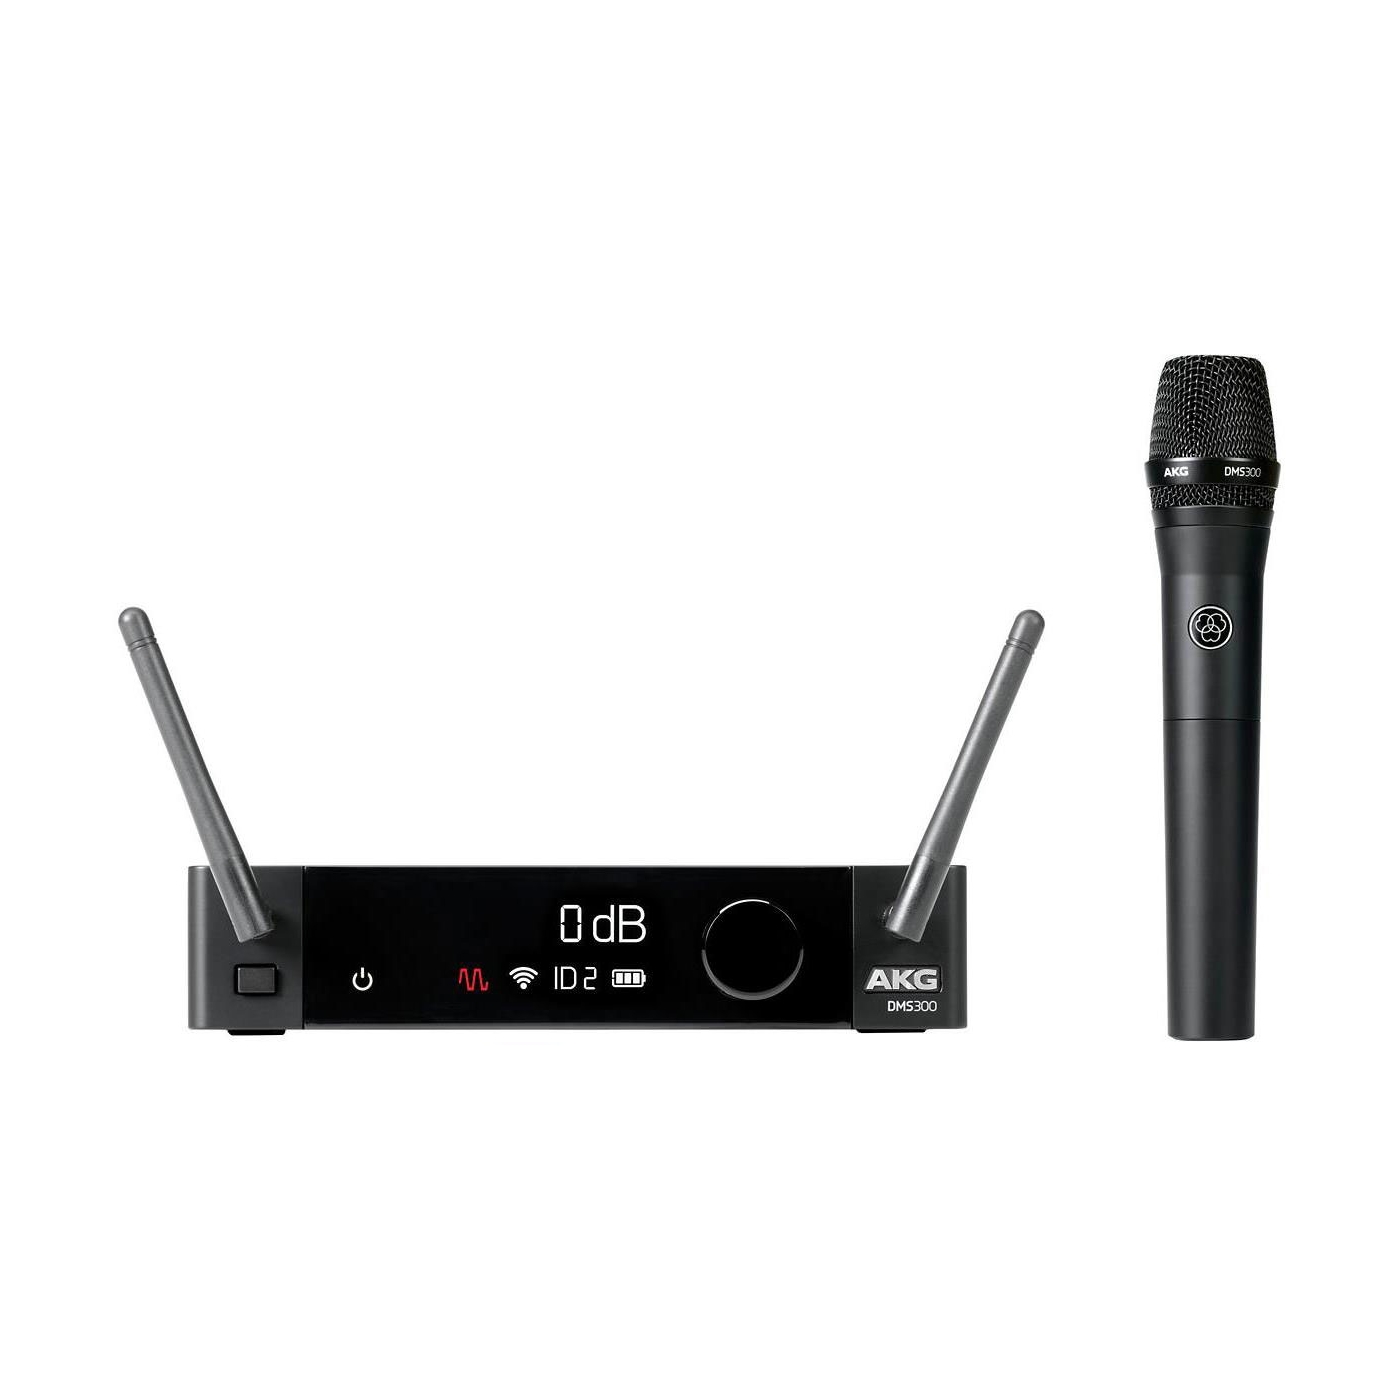 AKG DMS300 Vocal Set - цифровая радиосистема, состоящая из приемника SR300 и ручного передатч. HT300